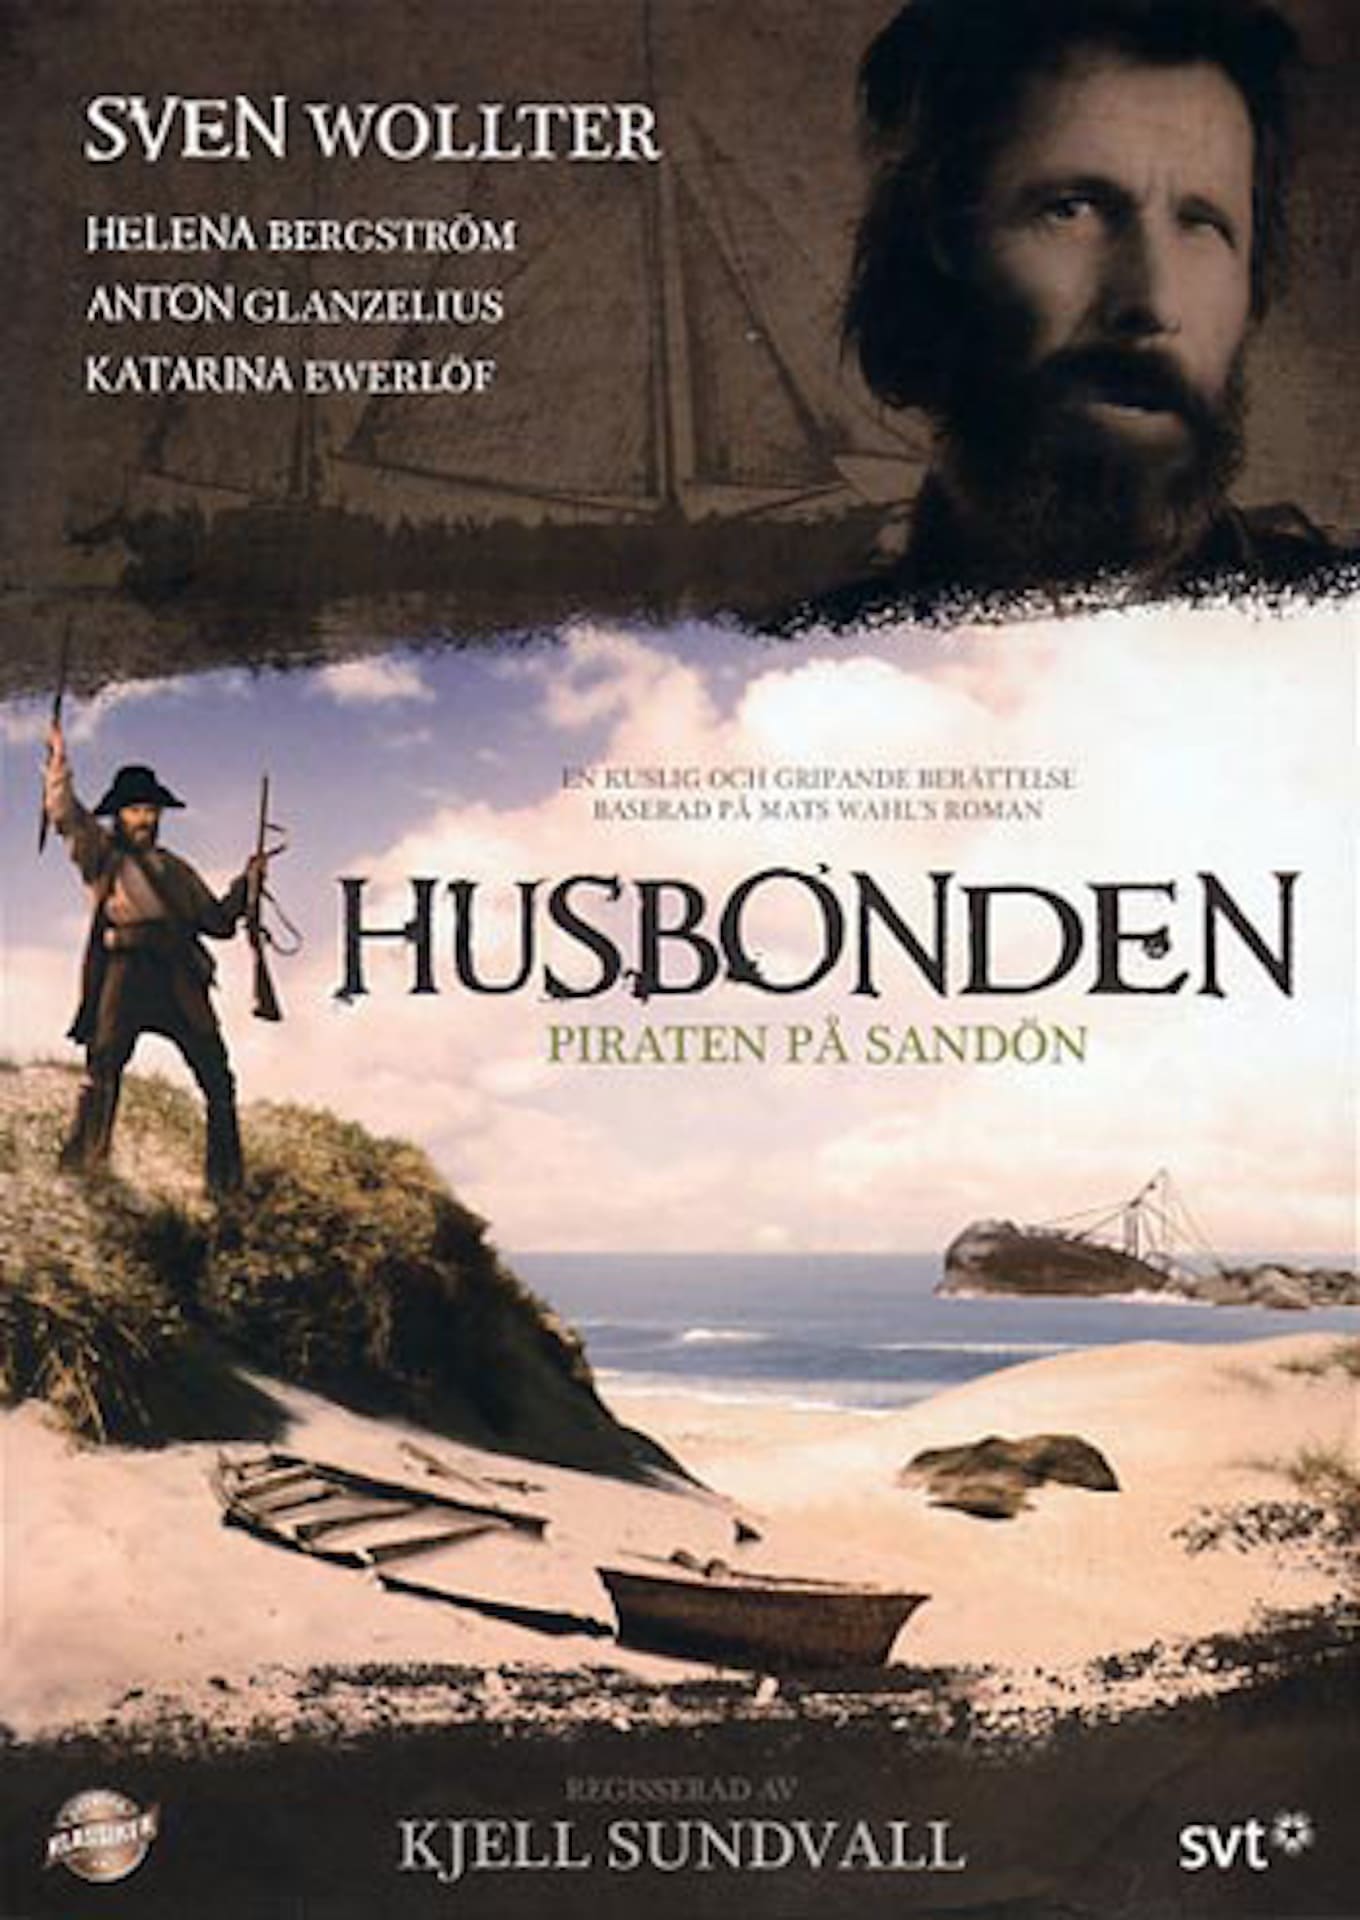 Husbonden (1989)